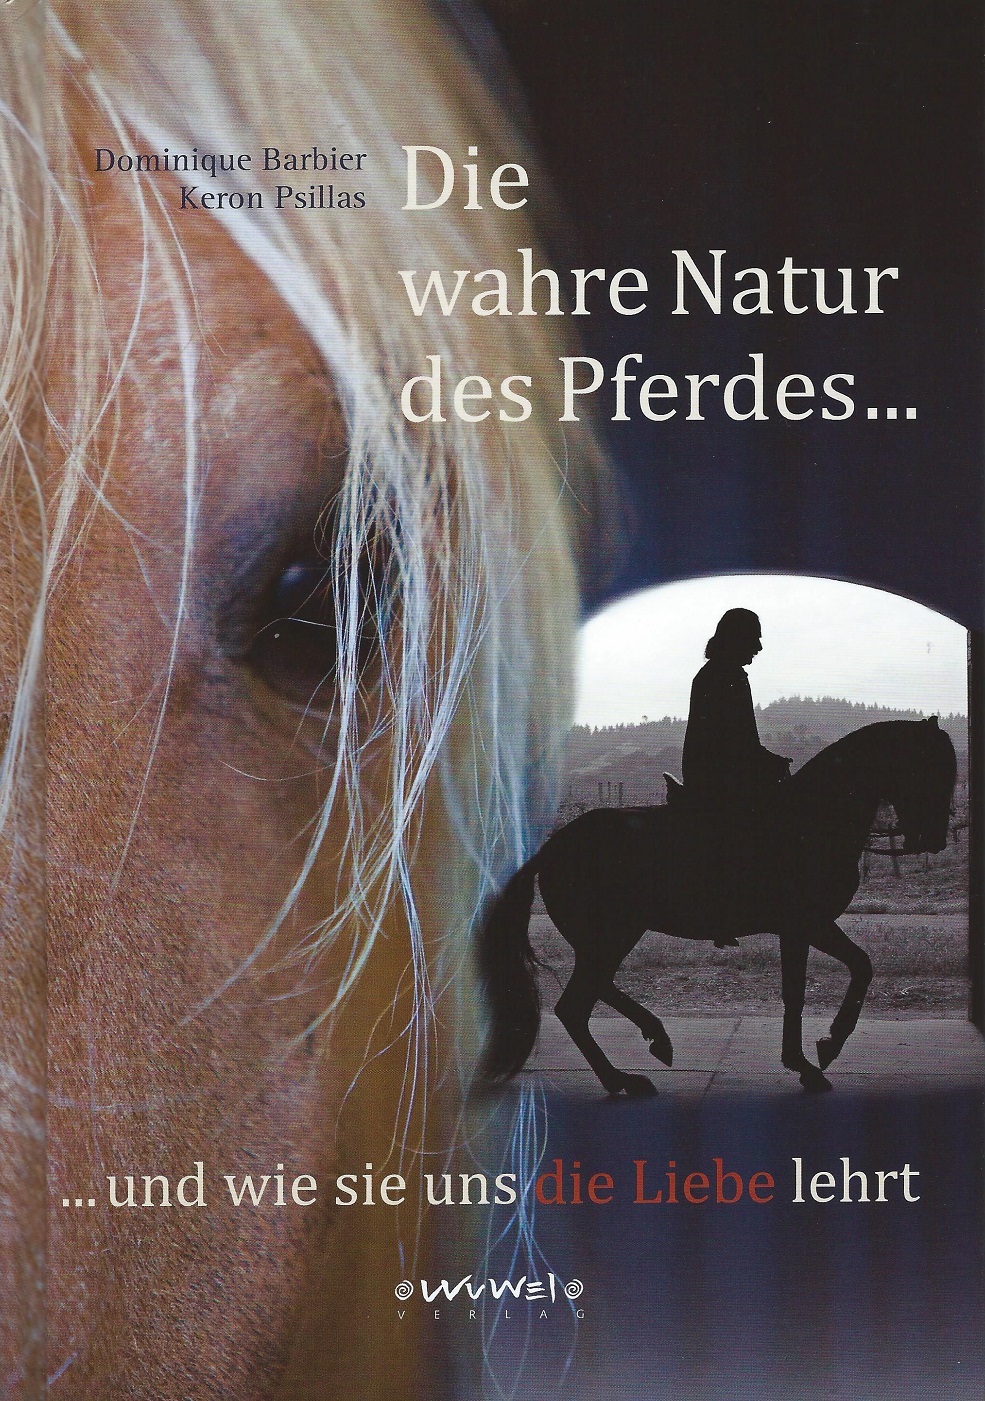 Dominique Barbier: Die wahre Natur des Pferdes...